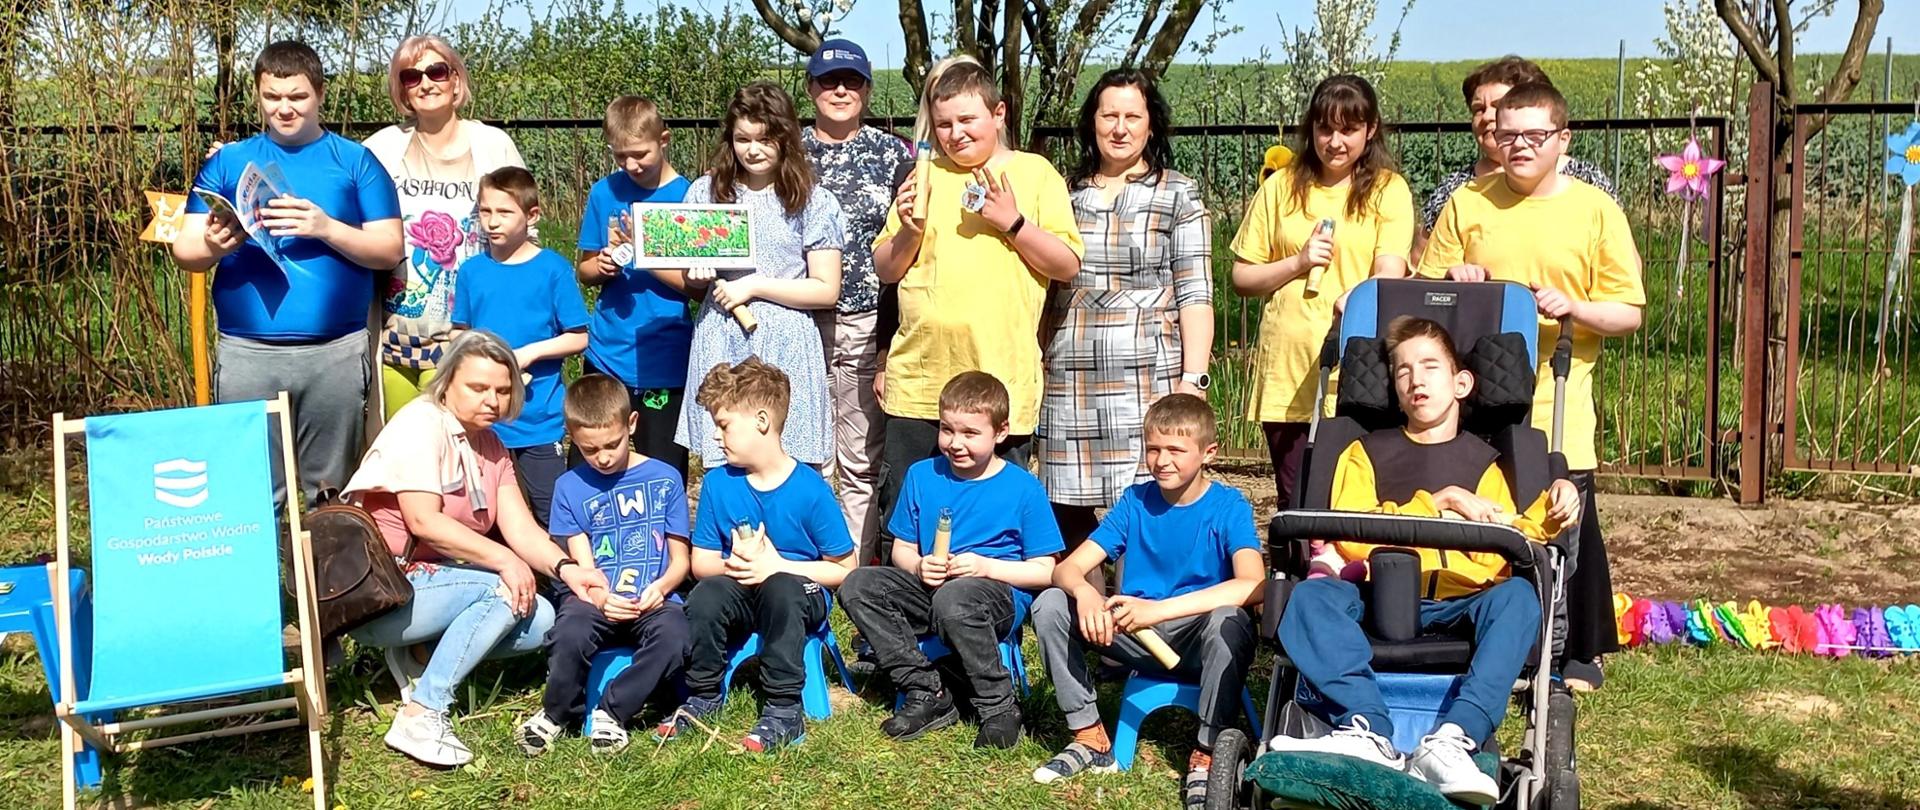 Grupa dzieci wraz z nauczycielami i pracownikiem PGW Wody Polskie stoi na trawie w ogródku szkolnym. W tle - kwitnące drzewa.